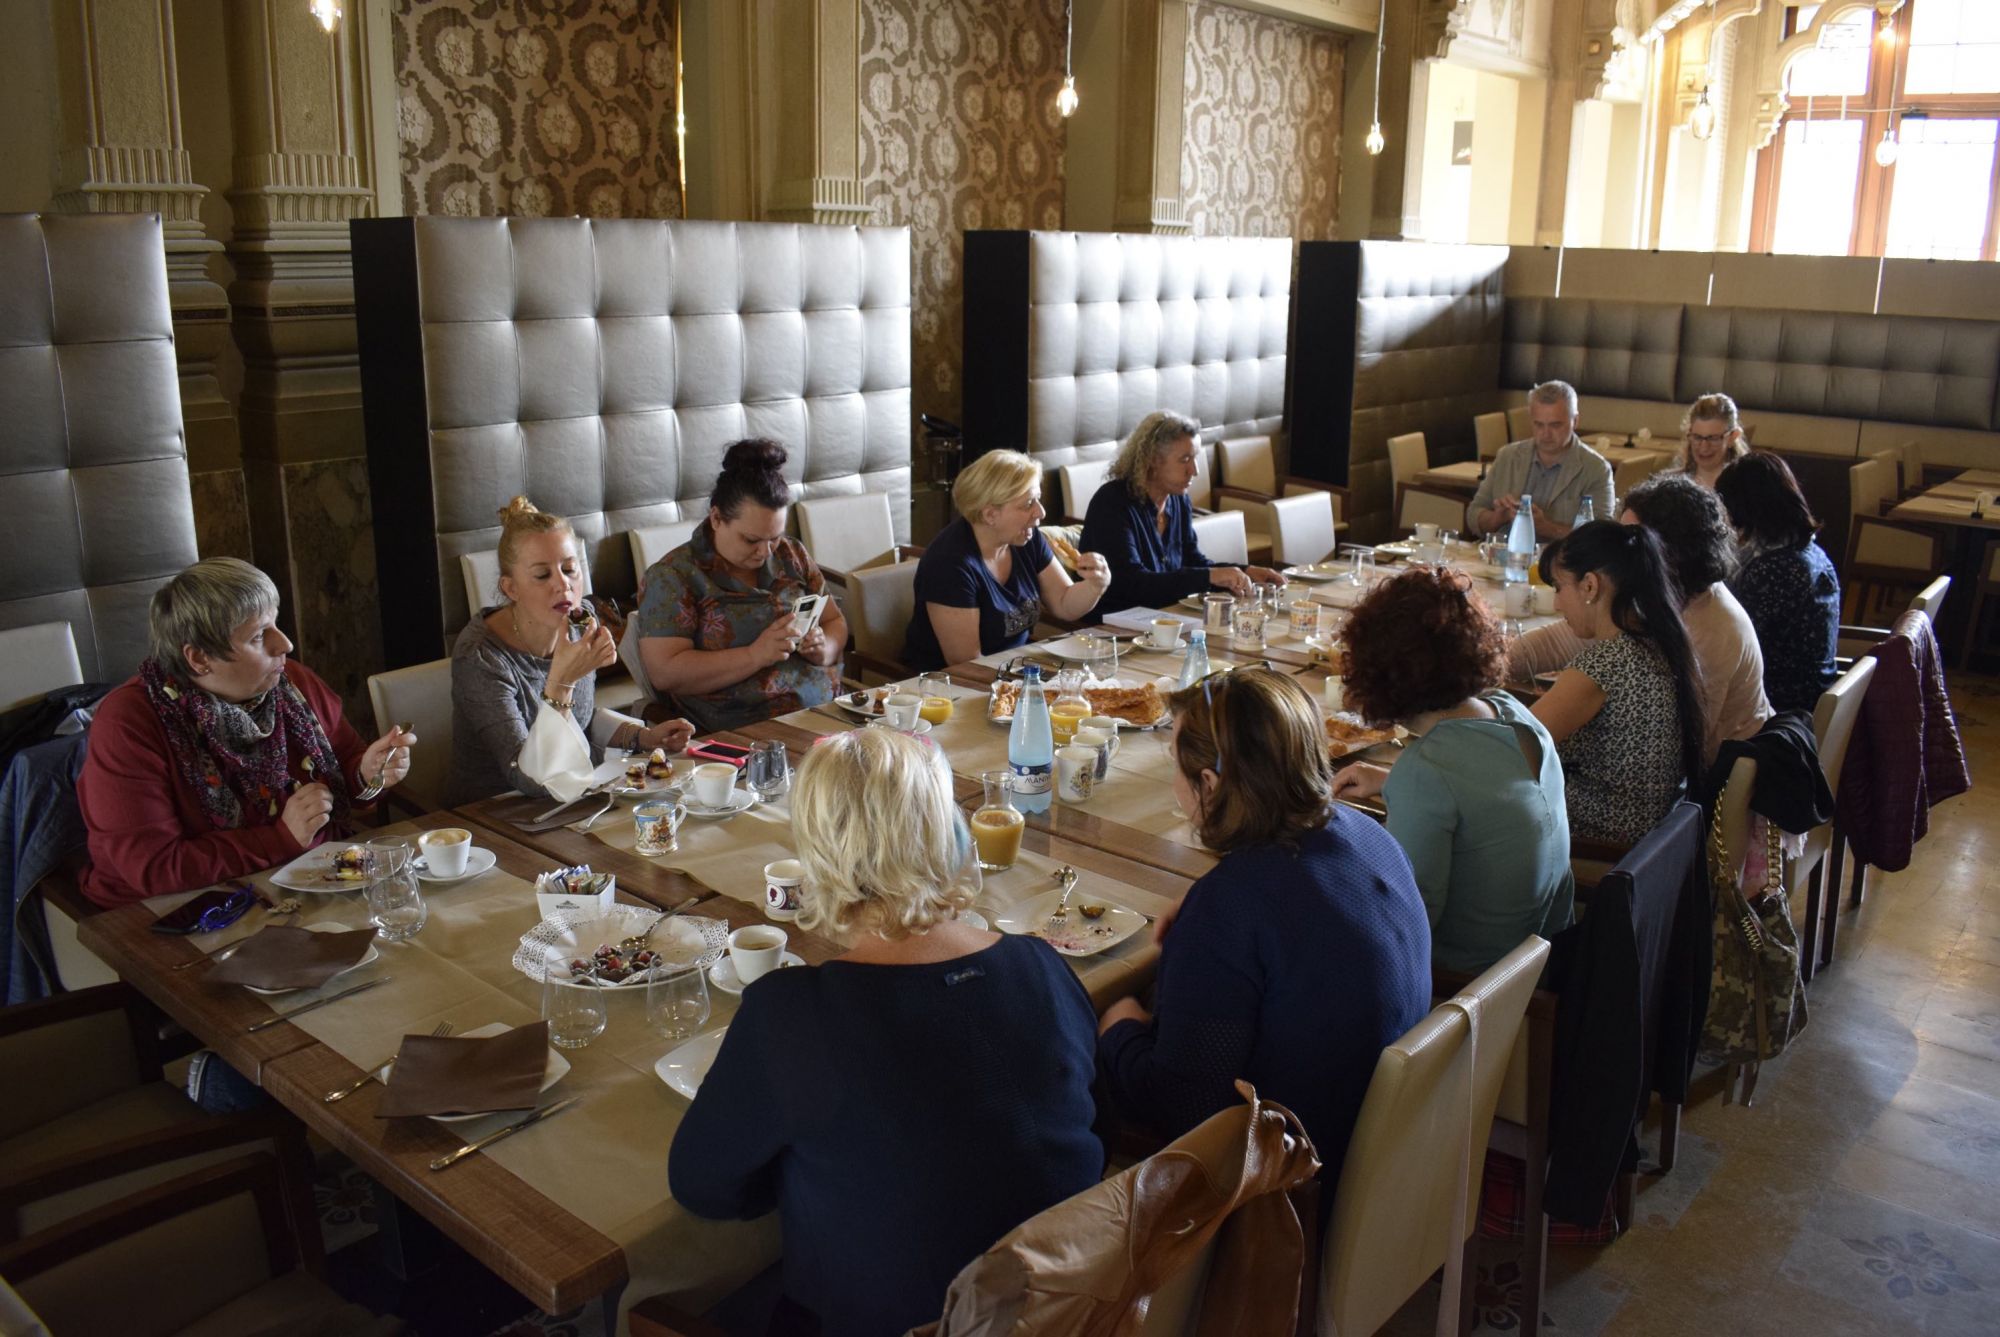 Blogger a confronto a Viareggio davanti ad una colazione ‘reale’